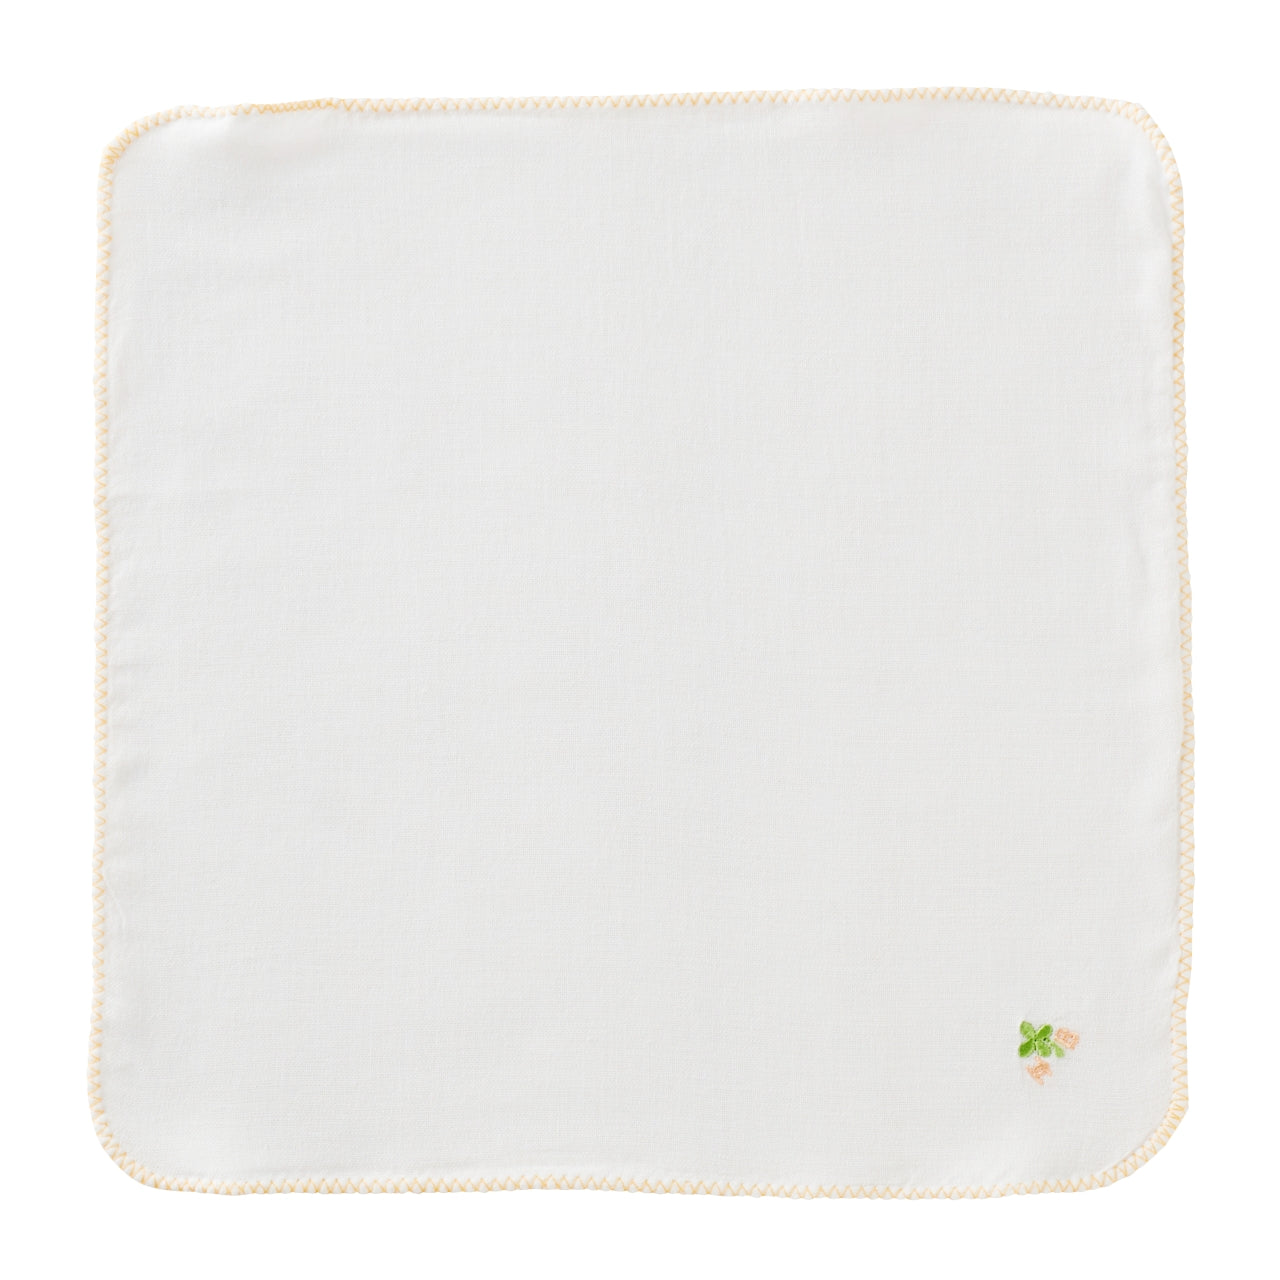 HB-5-Pack Gauze Handkerchiefs